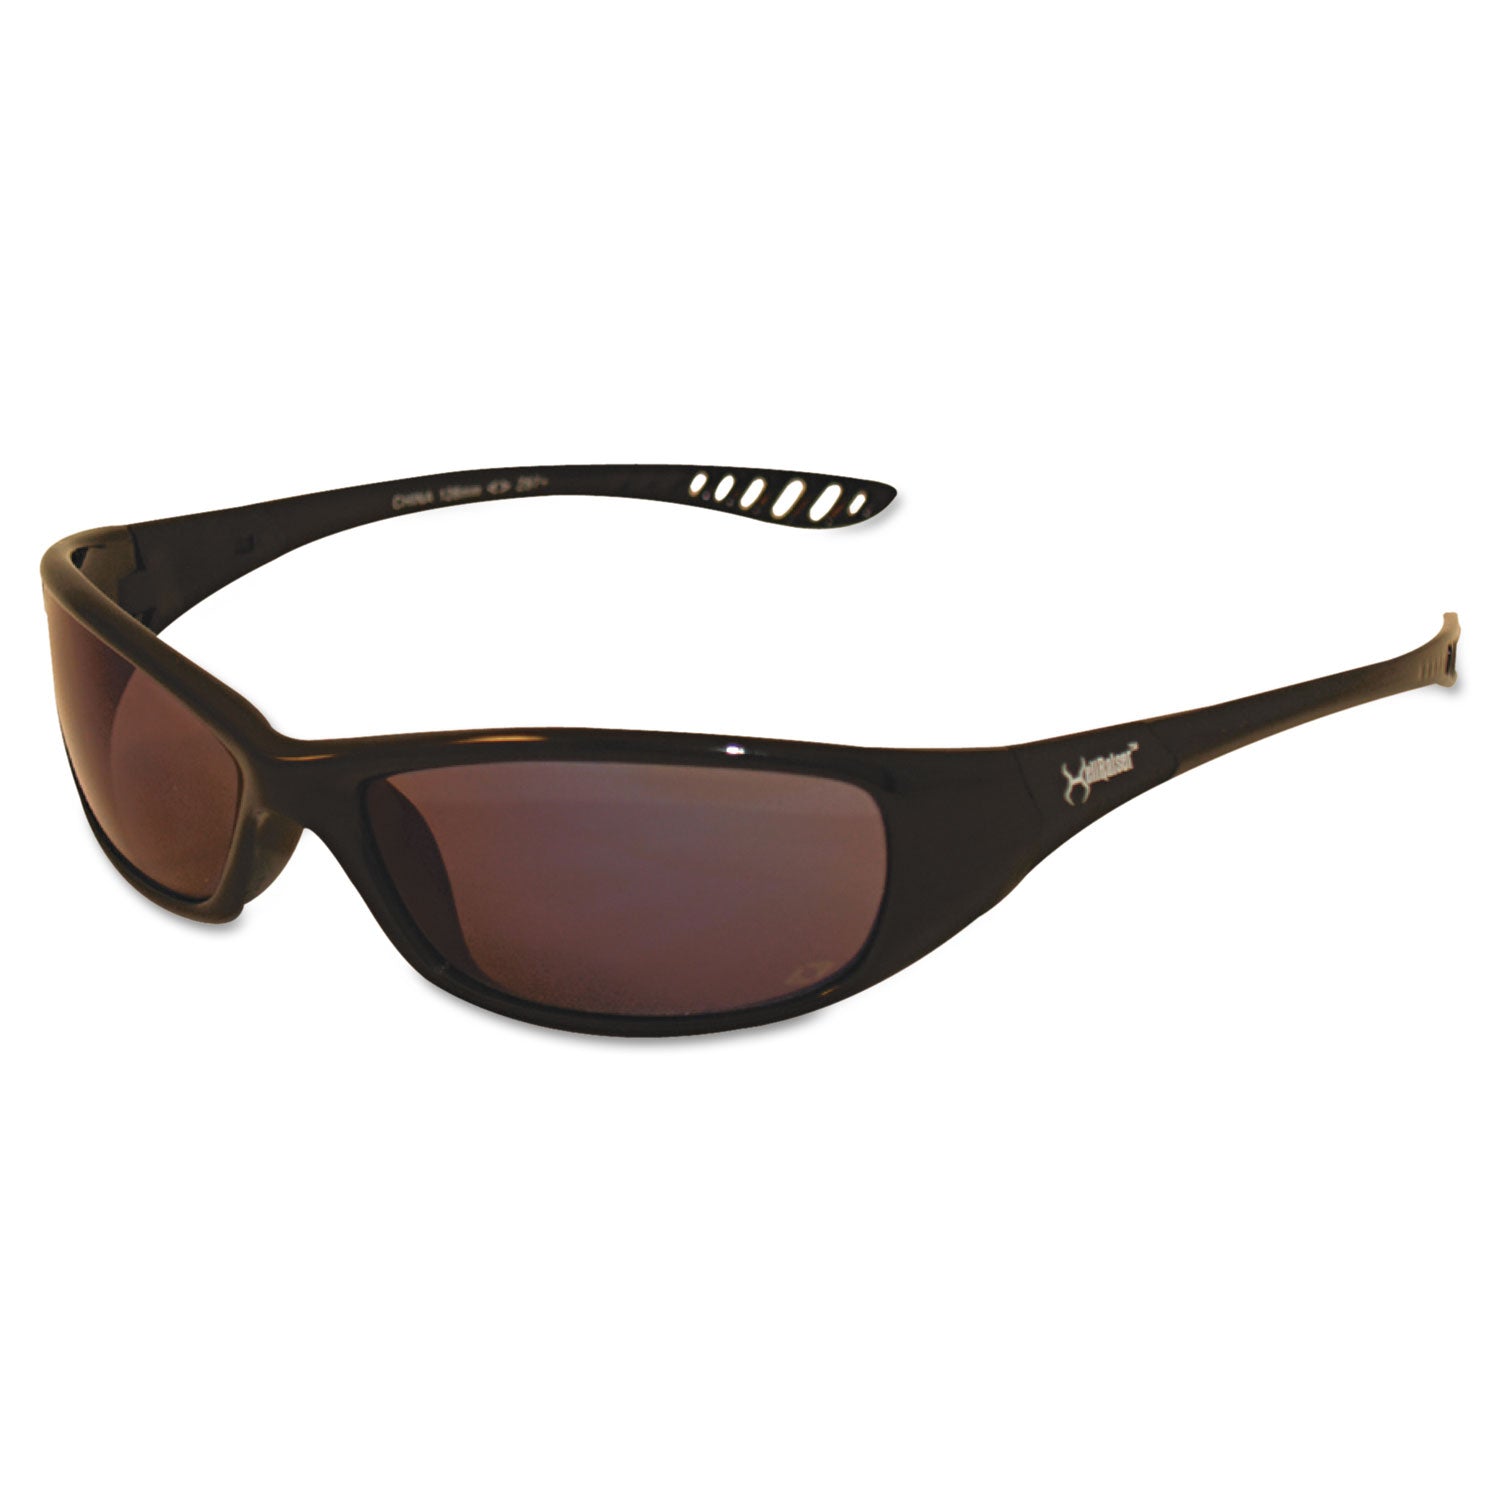 v40-hellraiser-safety-glasses-black-frame-photochromic-light-adaptive-lens_kcc25716 - 1